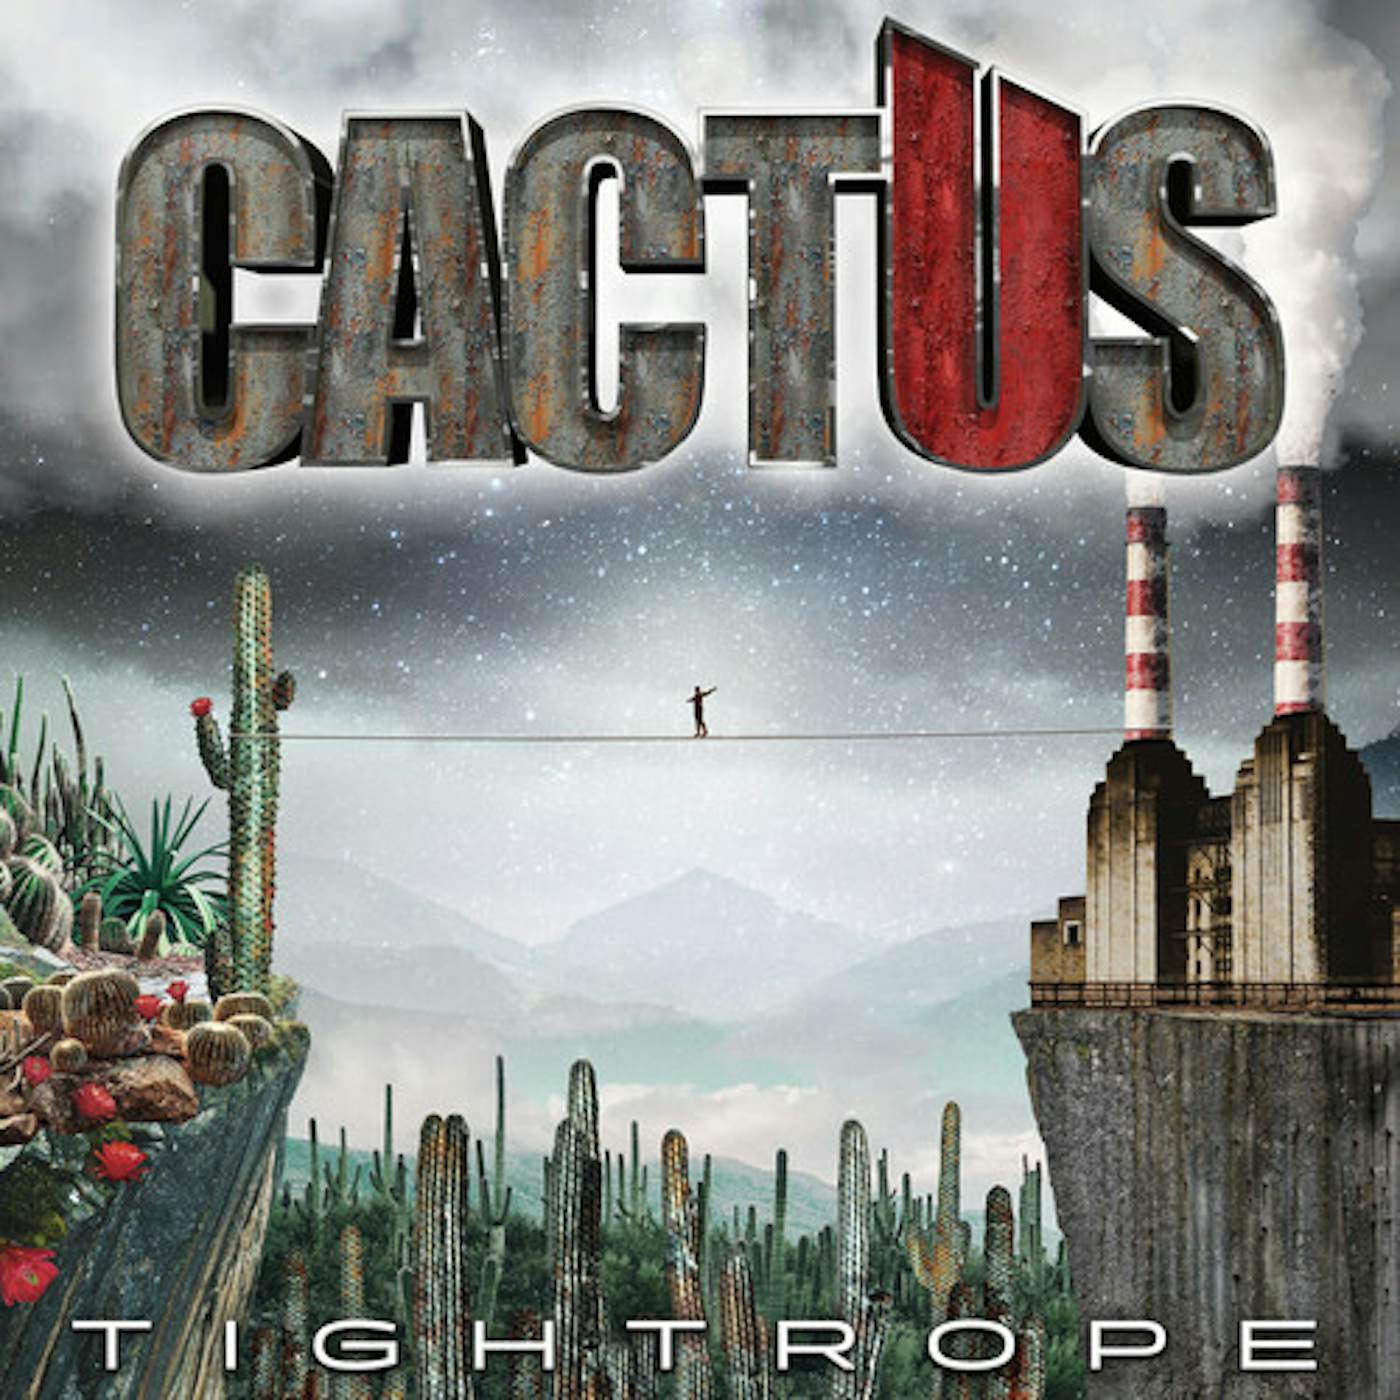 Cactus Tightrope Vinyl Record